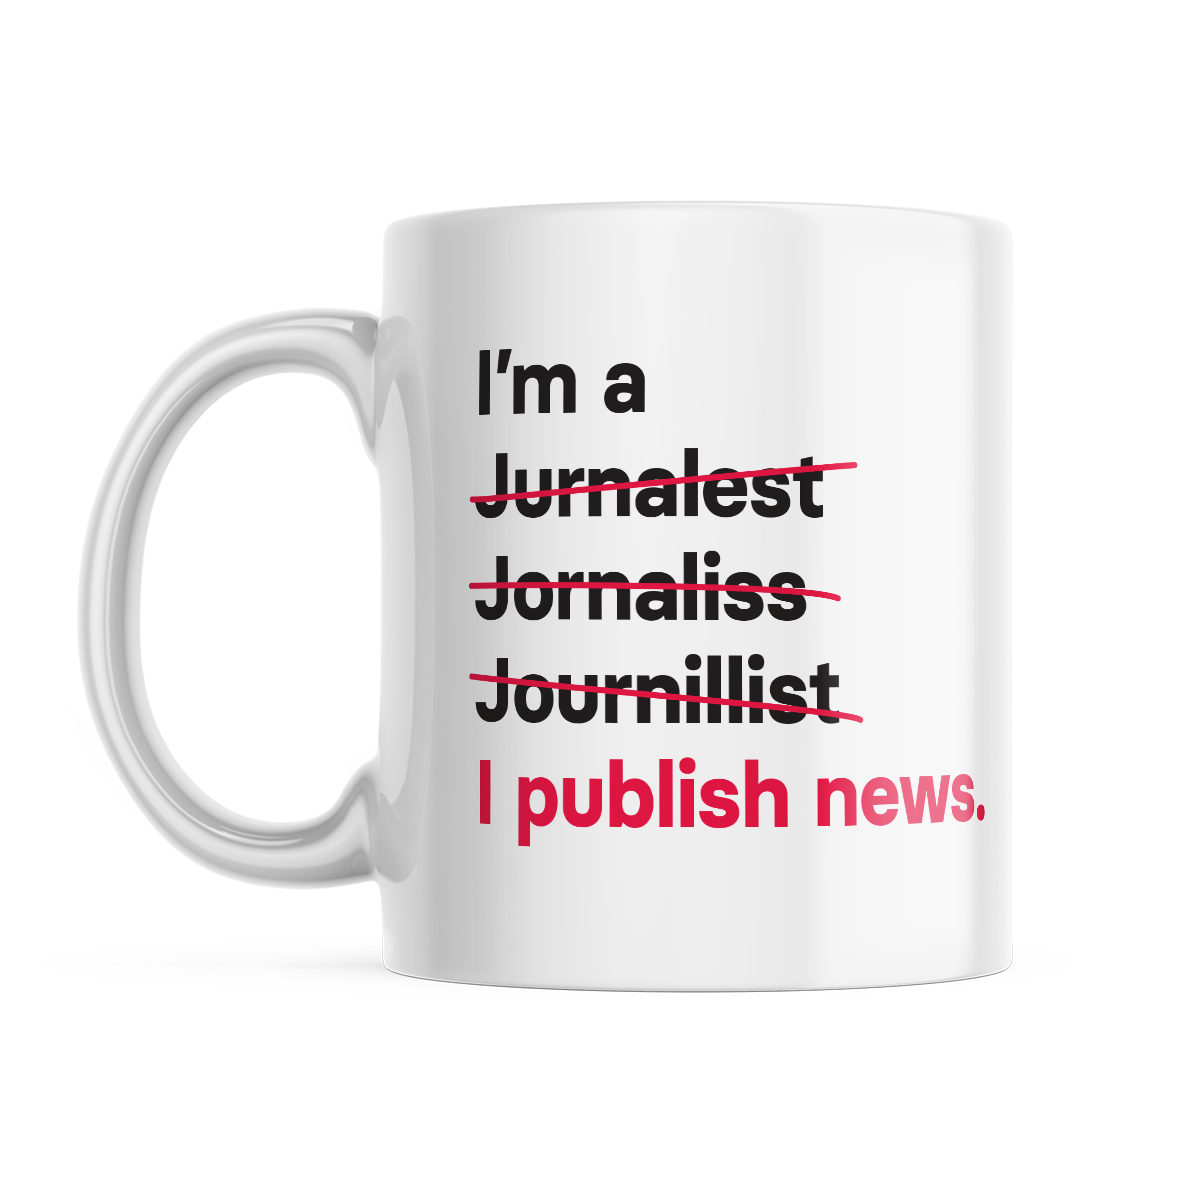 I'm a Journalist